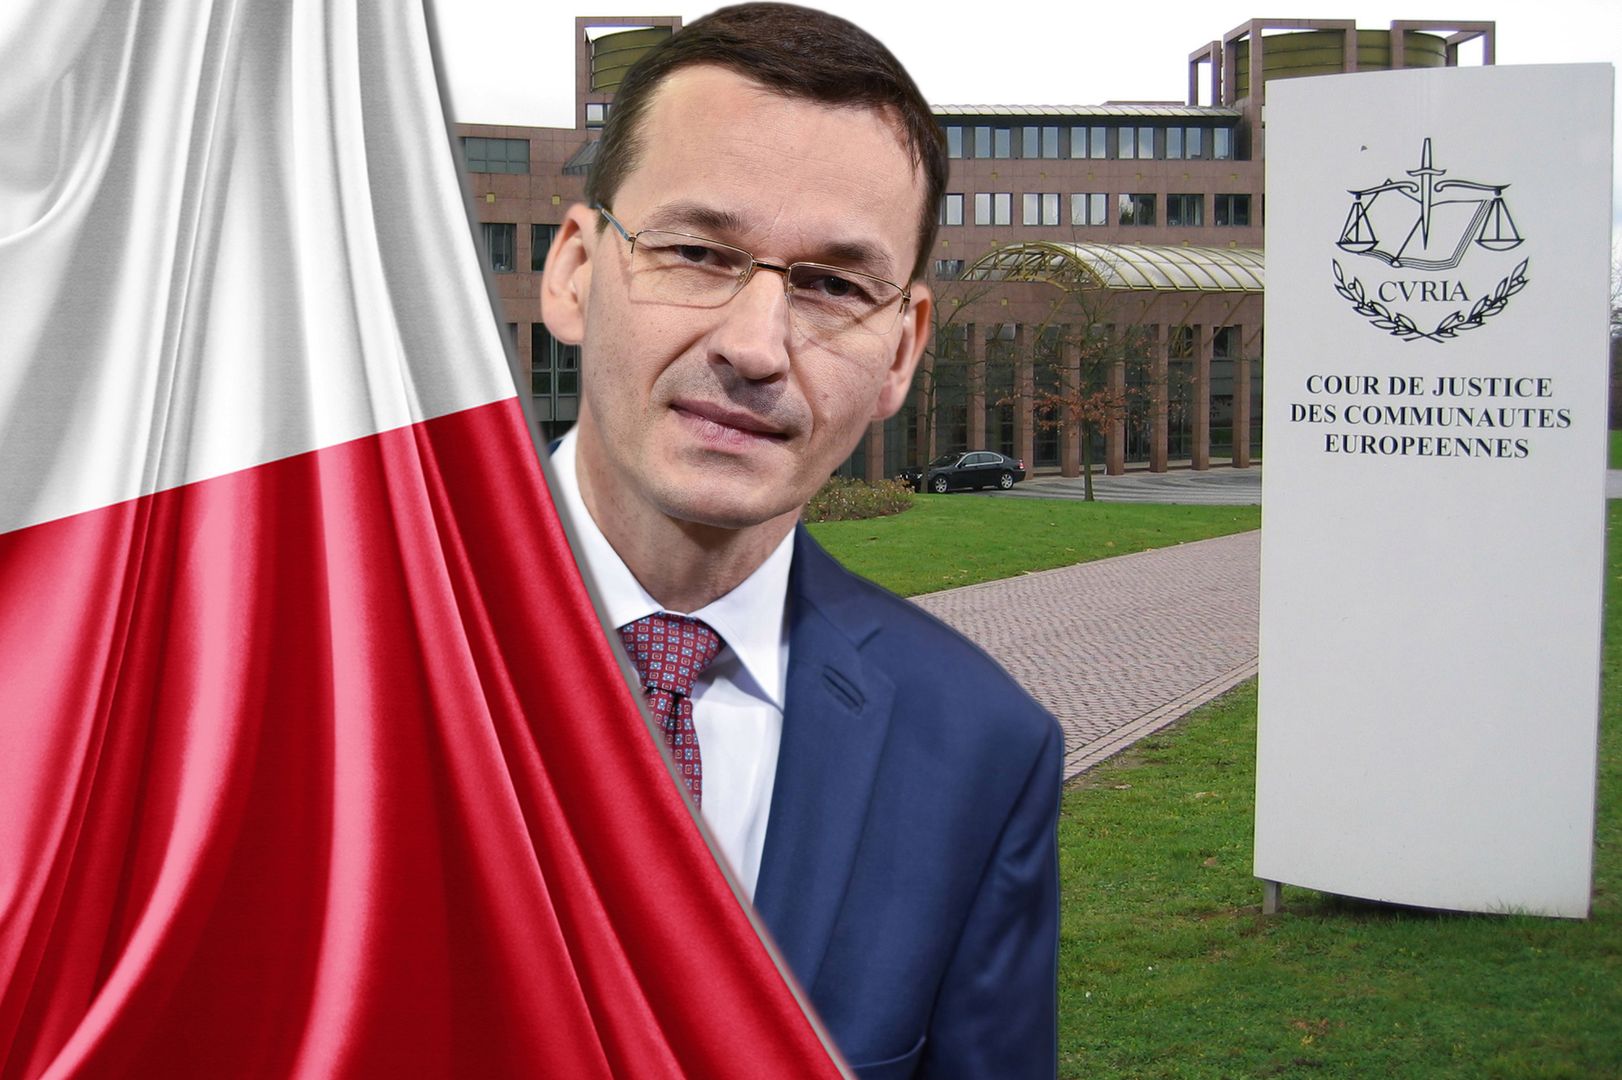 Polska pozwana przed sąd UE. Rząd odpowiada 